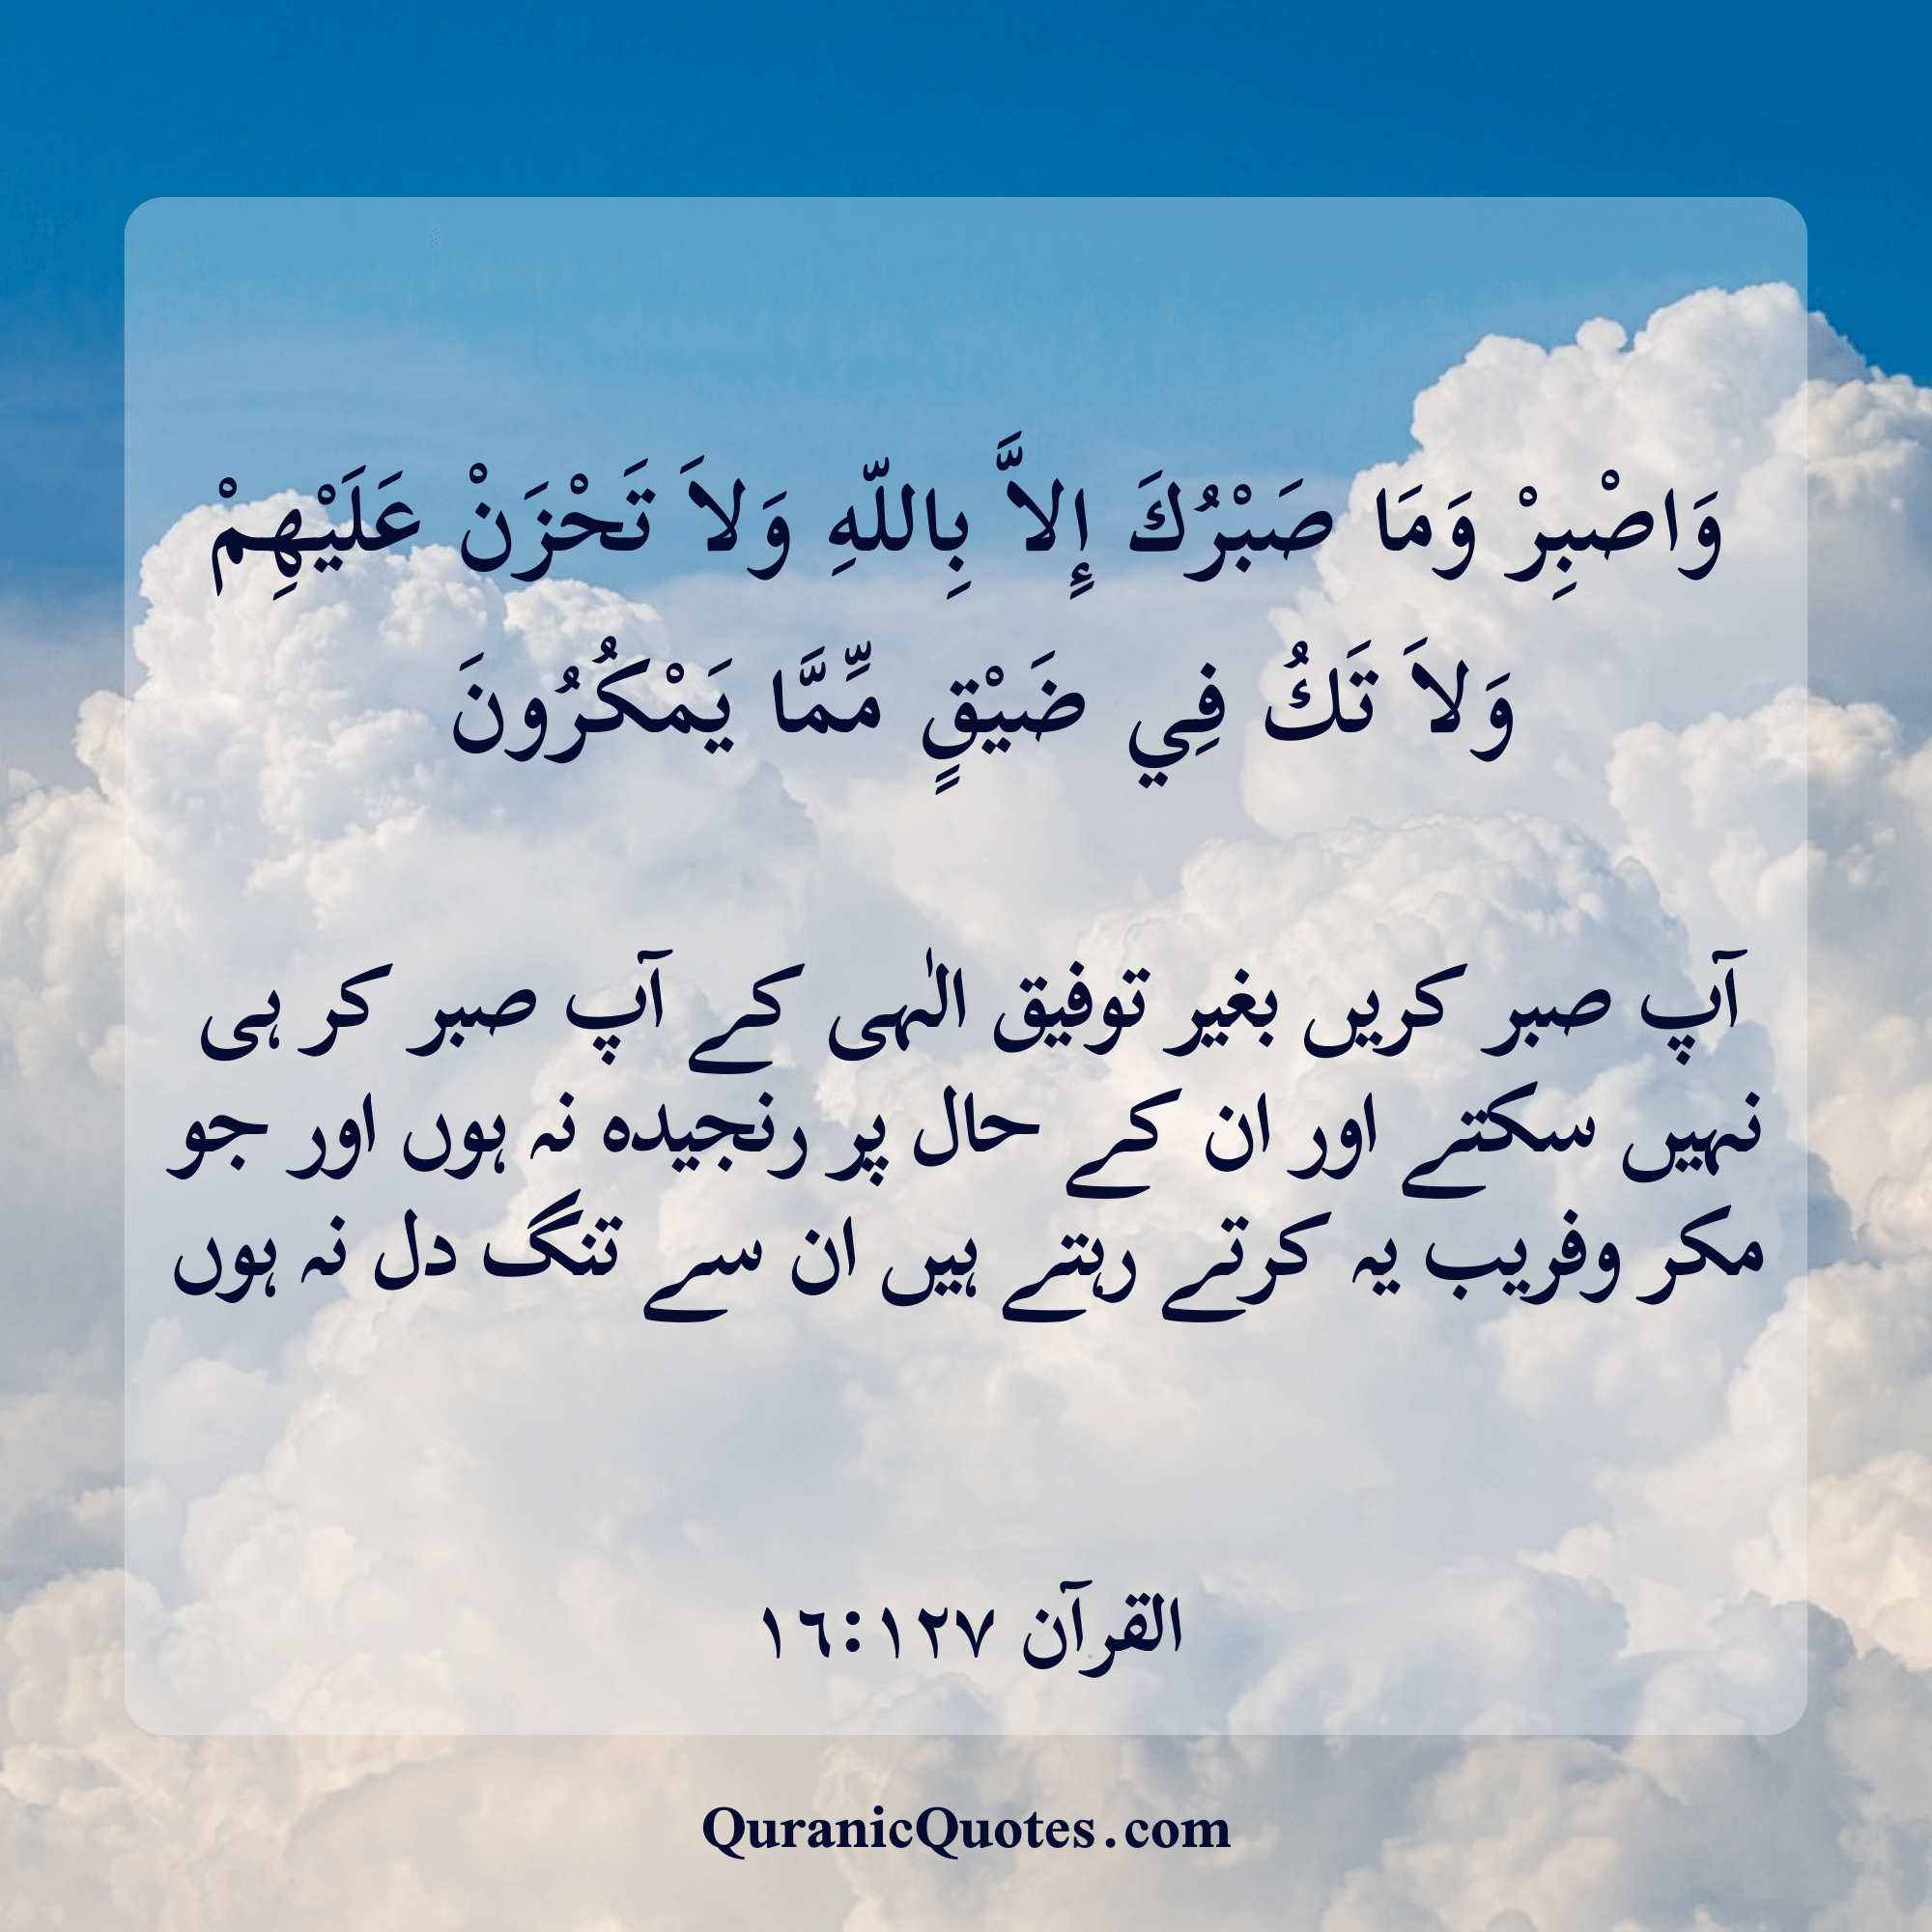 Quranic Quotes in Urdu 504